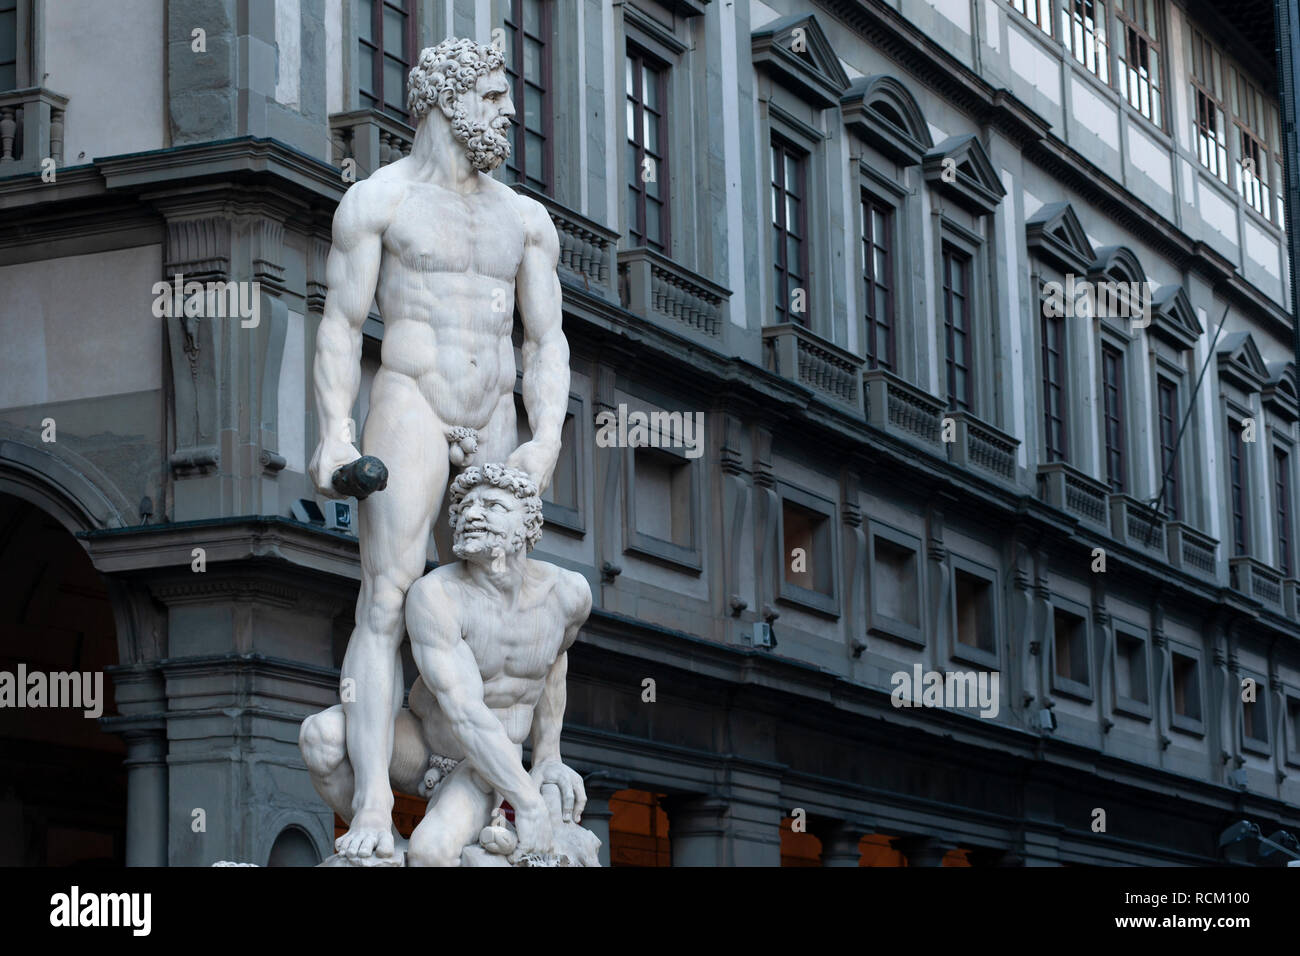 Hercules and Cacus by Baccio Bandinelli, Galleria degli Uffizi, Piazza della Signoria, Florence, Italy Stock Photo